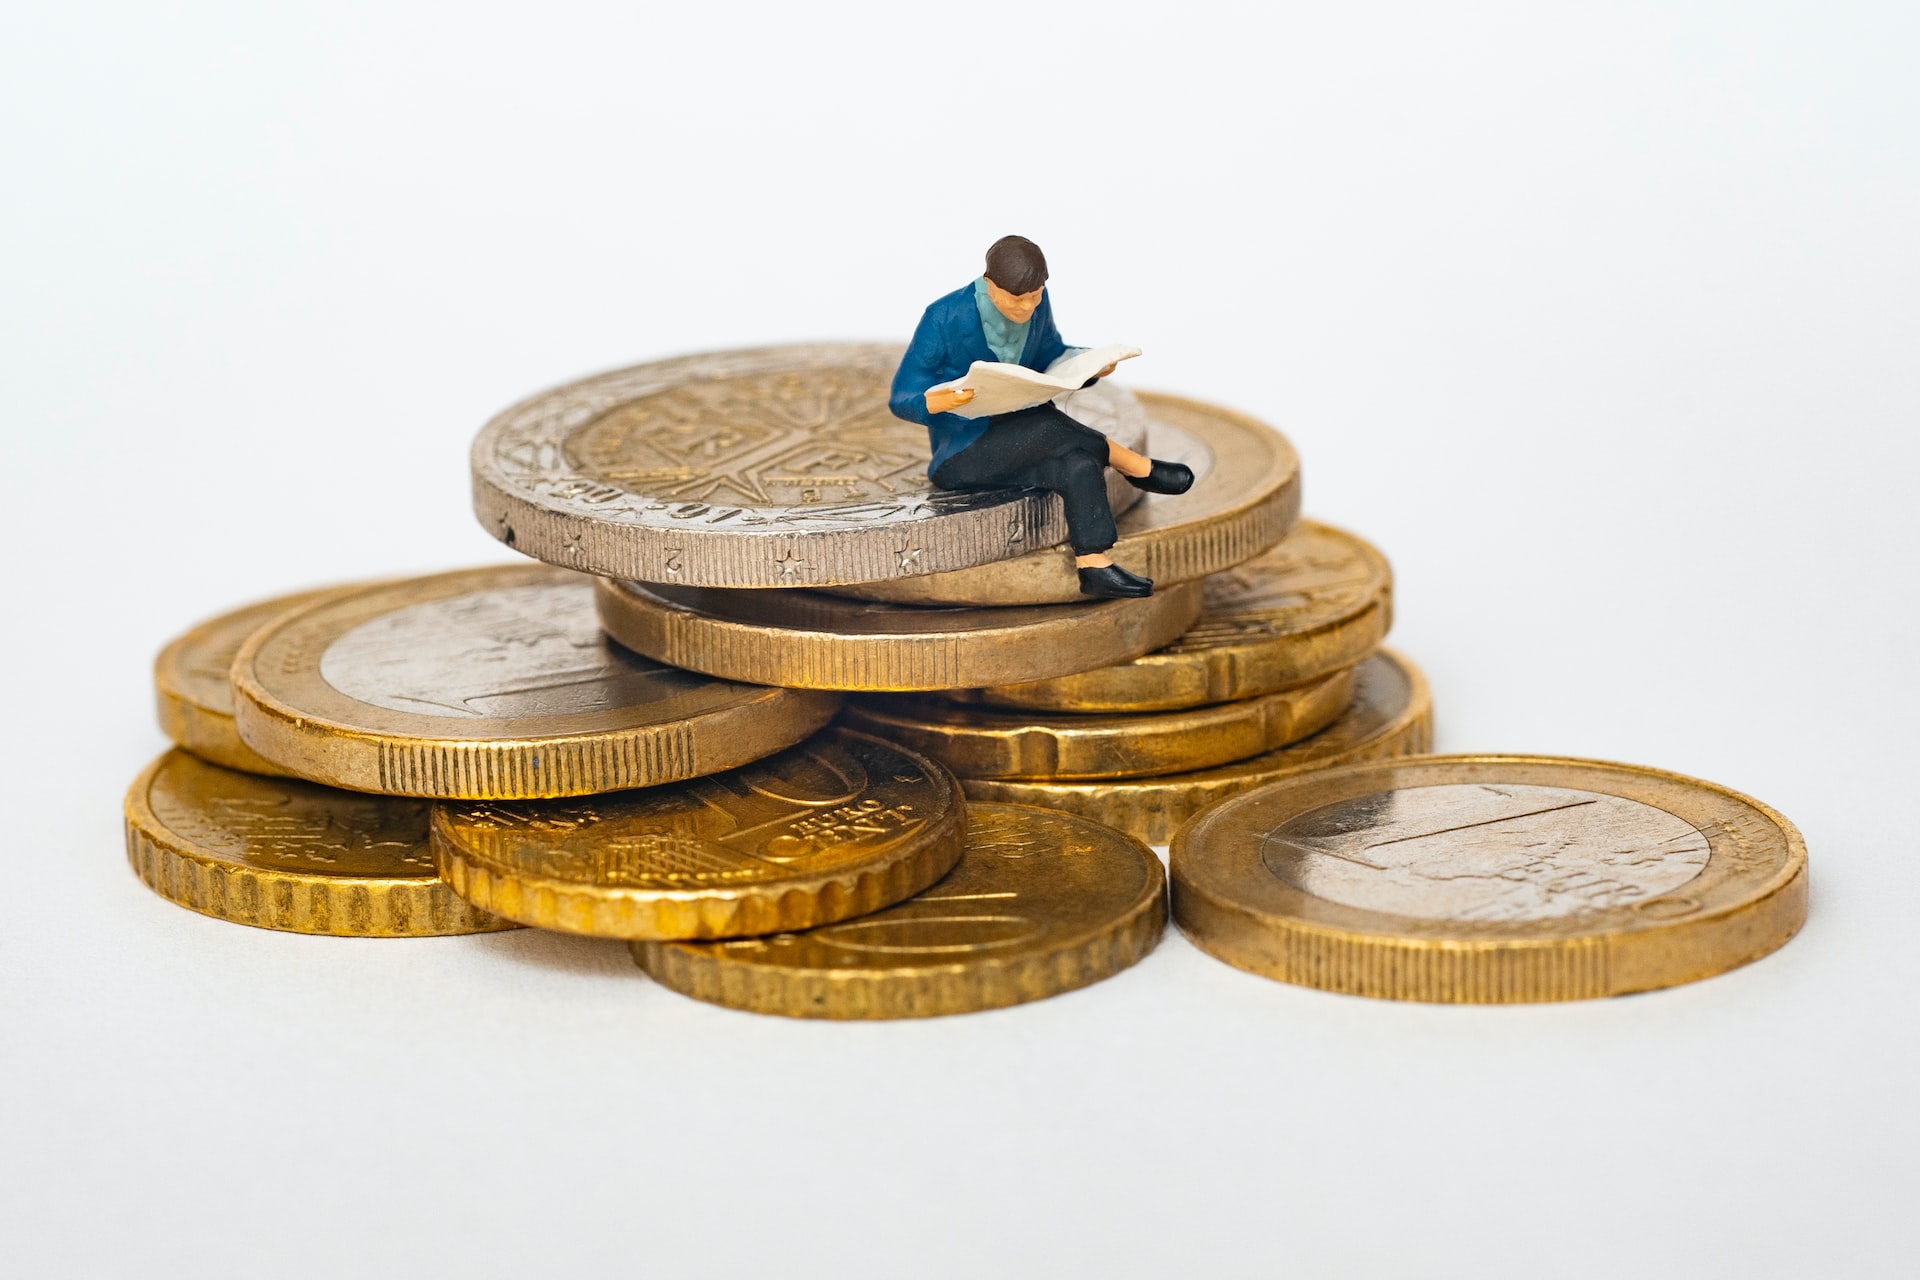 Kleiner Mann sitz auf einem Stapel münzen